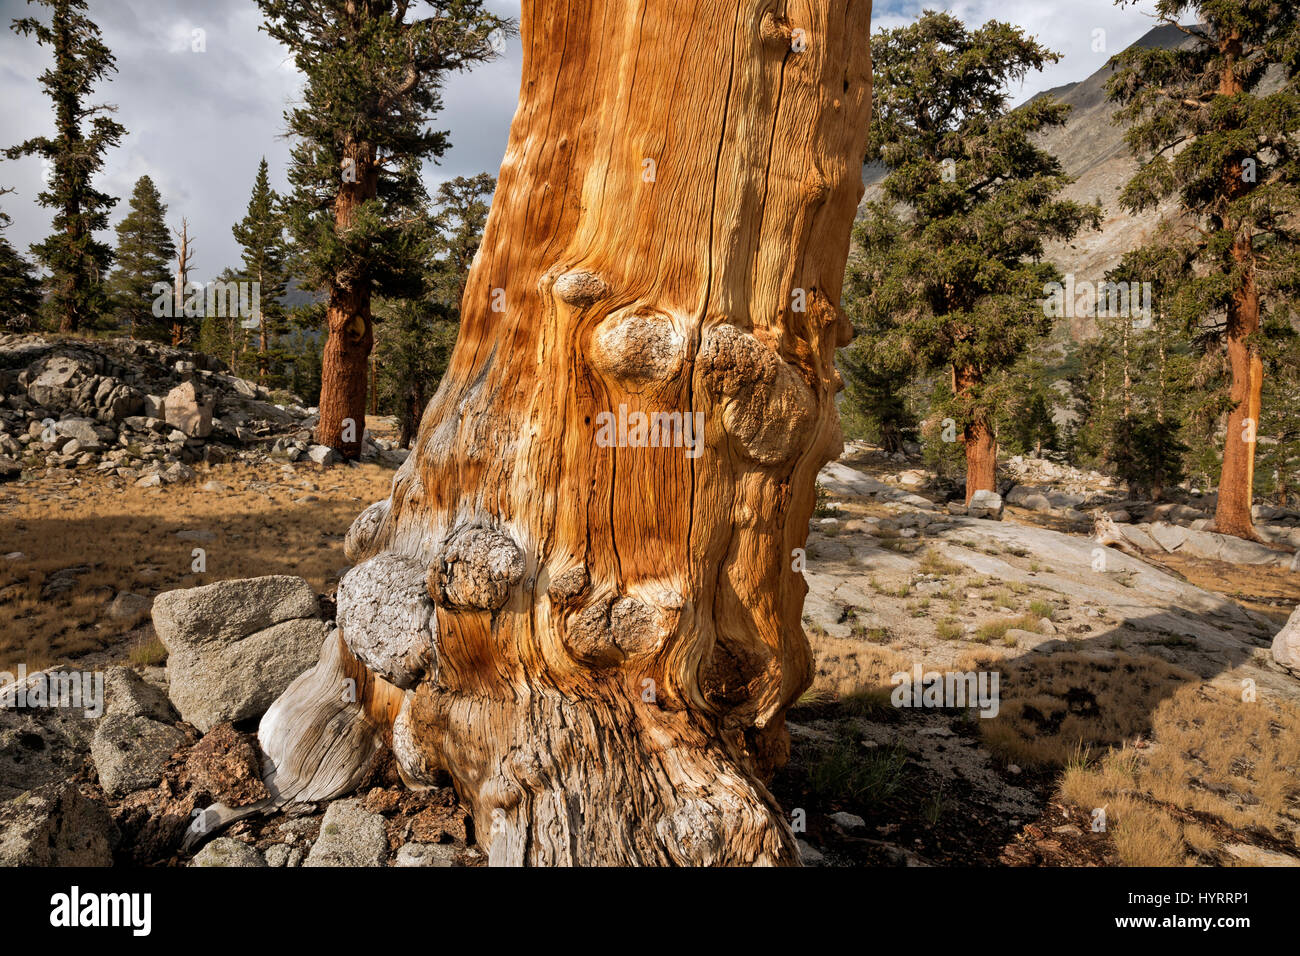 CA03180-00... Kalifornien - ein toter Baum in einem Hain Bristlecone Kiefern in der Nähe von Lake Arrowhead im Kings Canyon National Park. Stockfoto